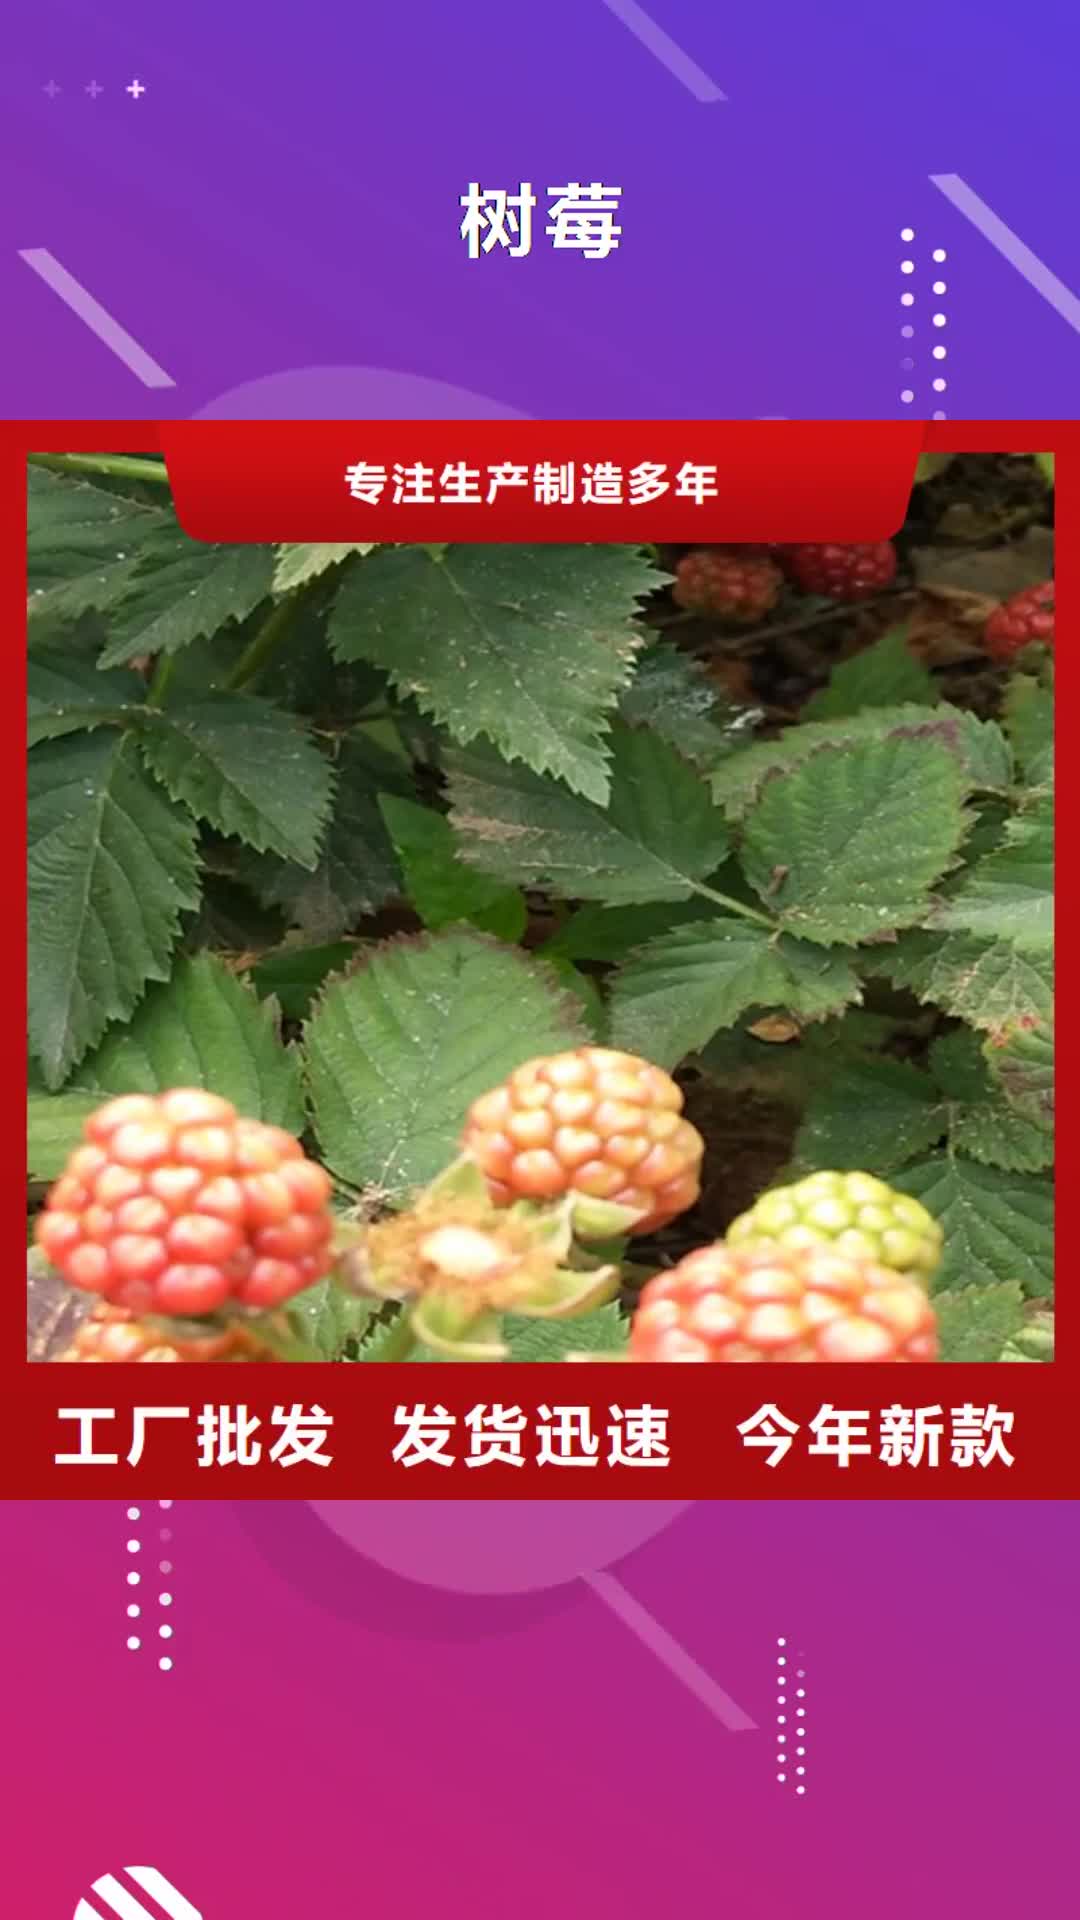 【乌海 树莓,梨树苗高质量高信誉】